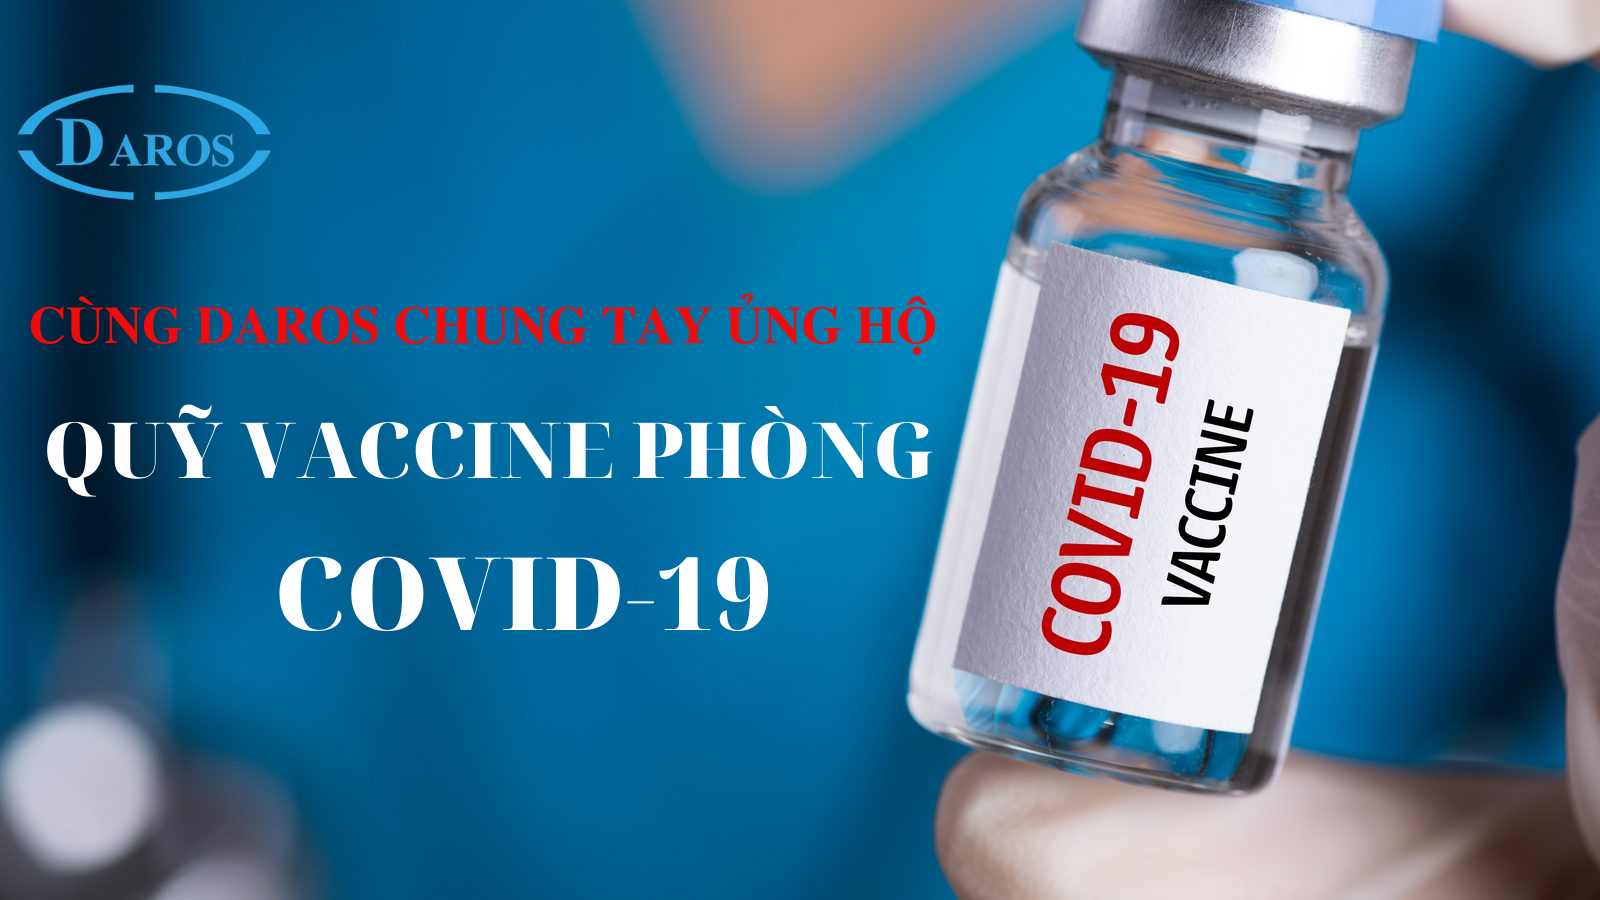 Daros – Ủng hộ “Quỹ Vaccine phòng COVID-19”